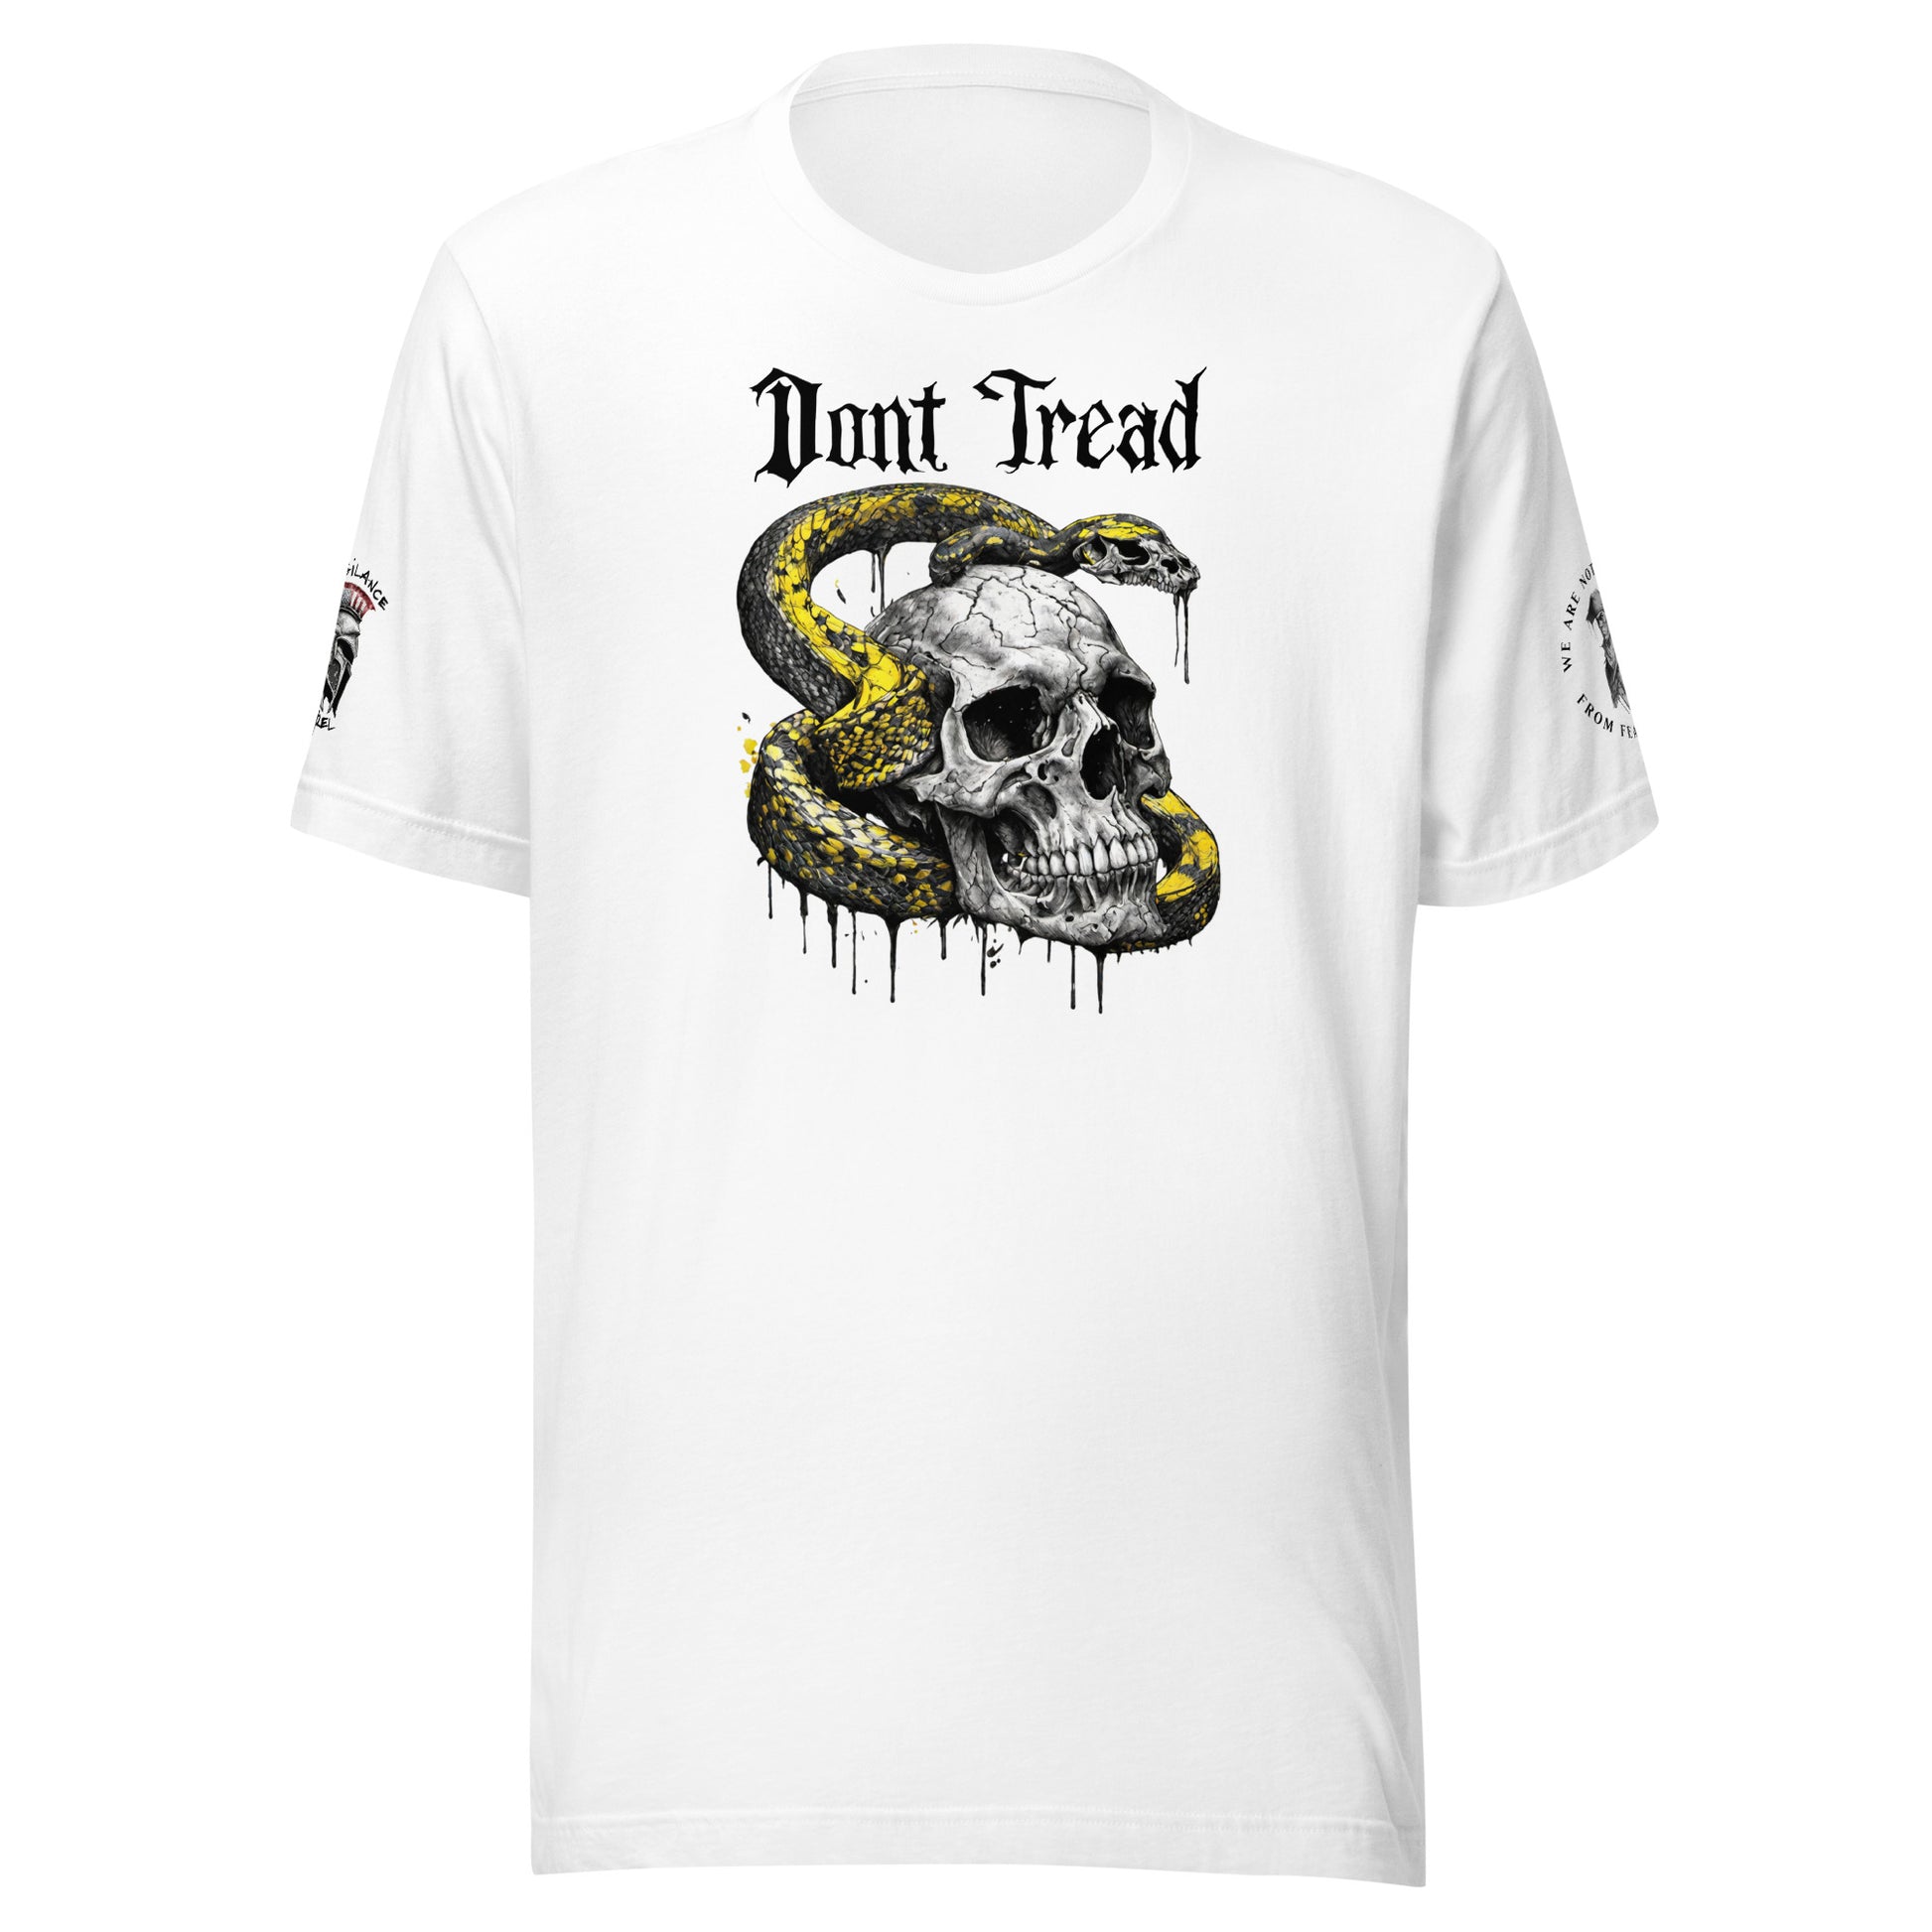 Don't Tread on Me Skull & Snake (logo & minuteman sleeve) Limited T-Shirt White